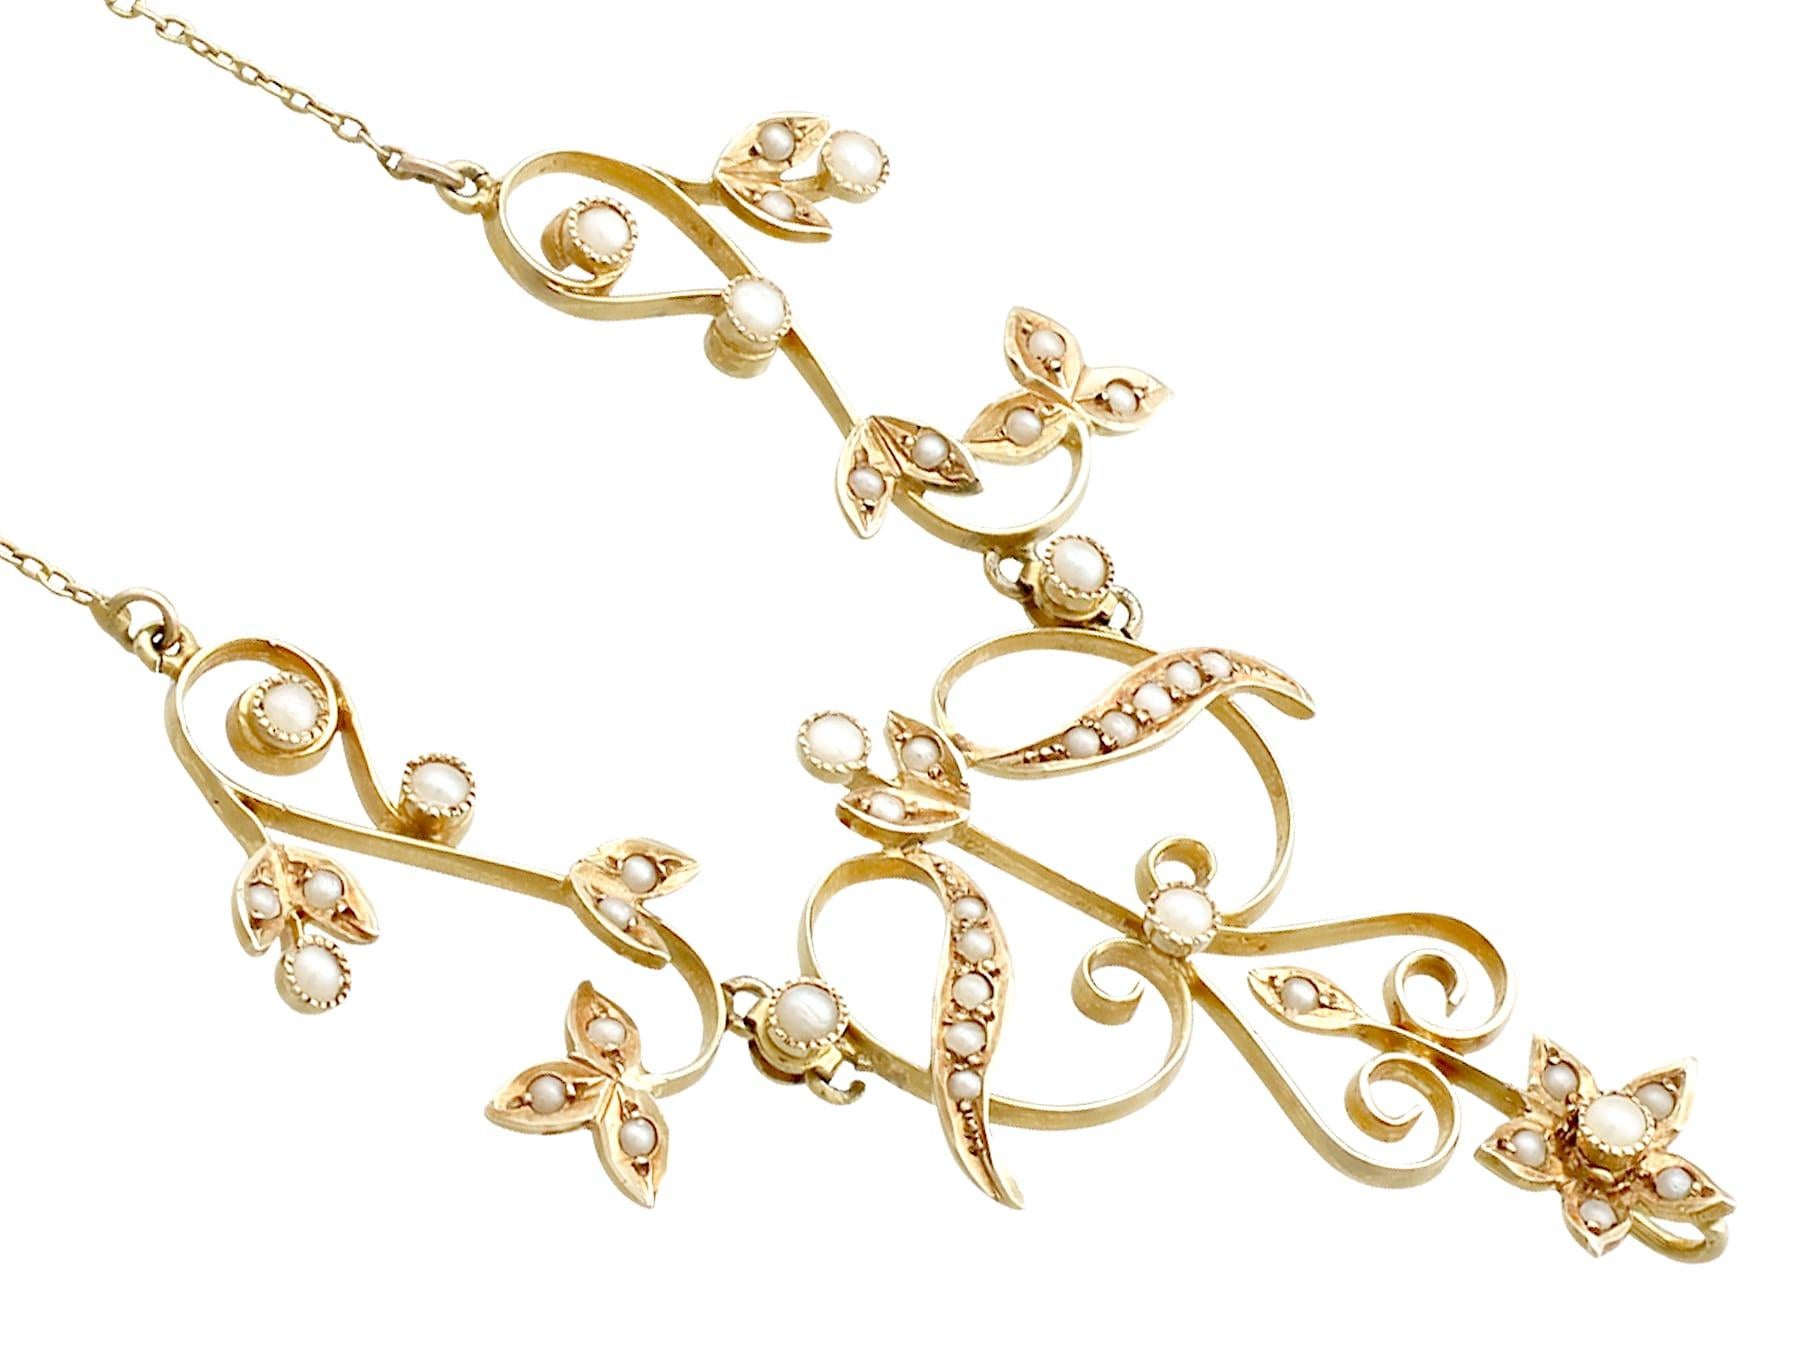 Uncut Antique 1900s Art Nouveau Pearl and Yellow Gold Necklace